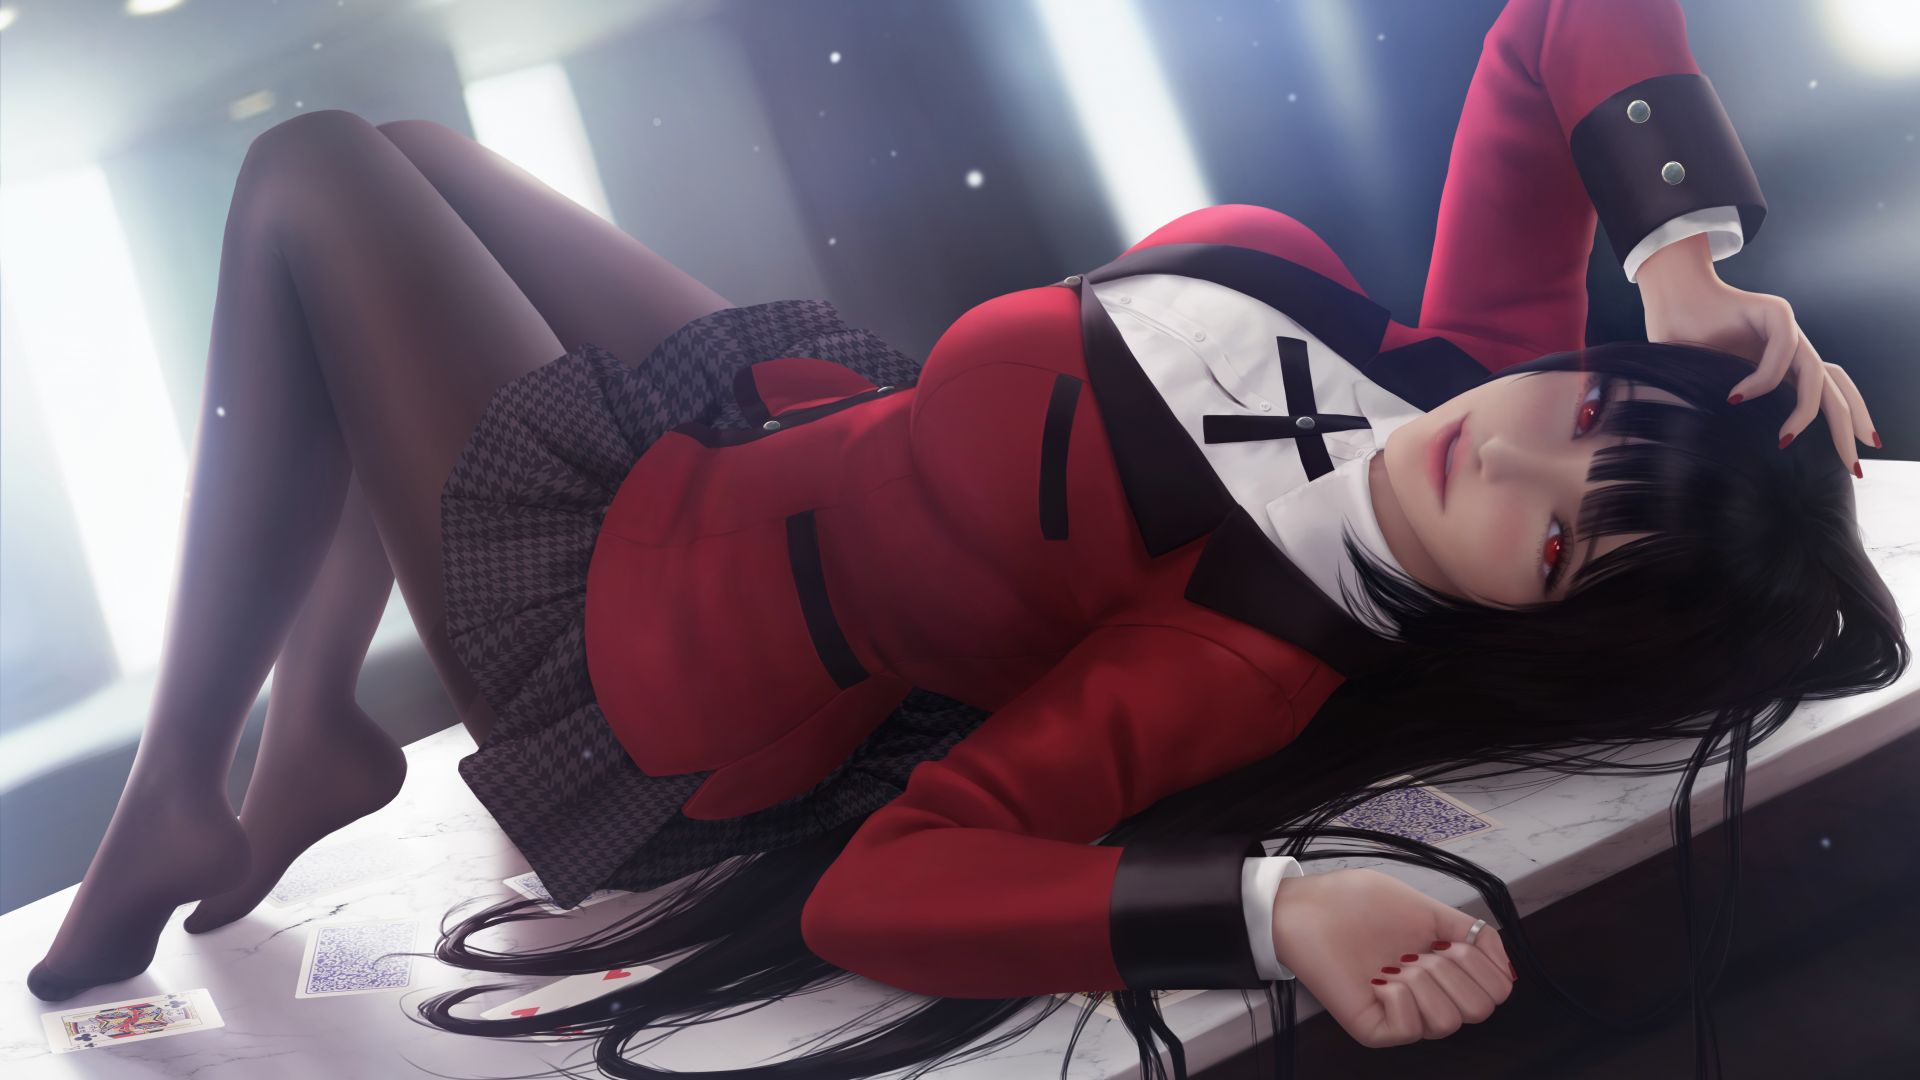 Wallpaper Anime girl, lying on poker table, art